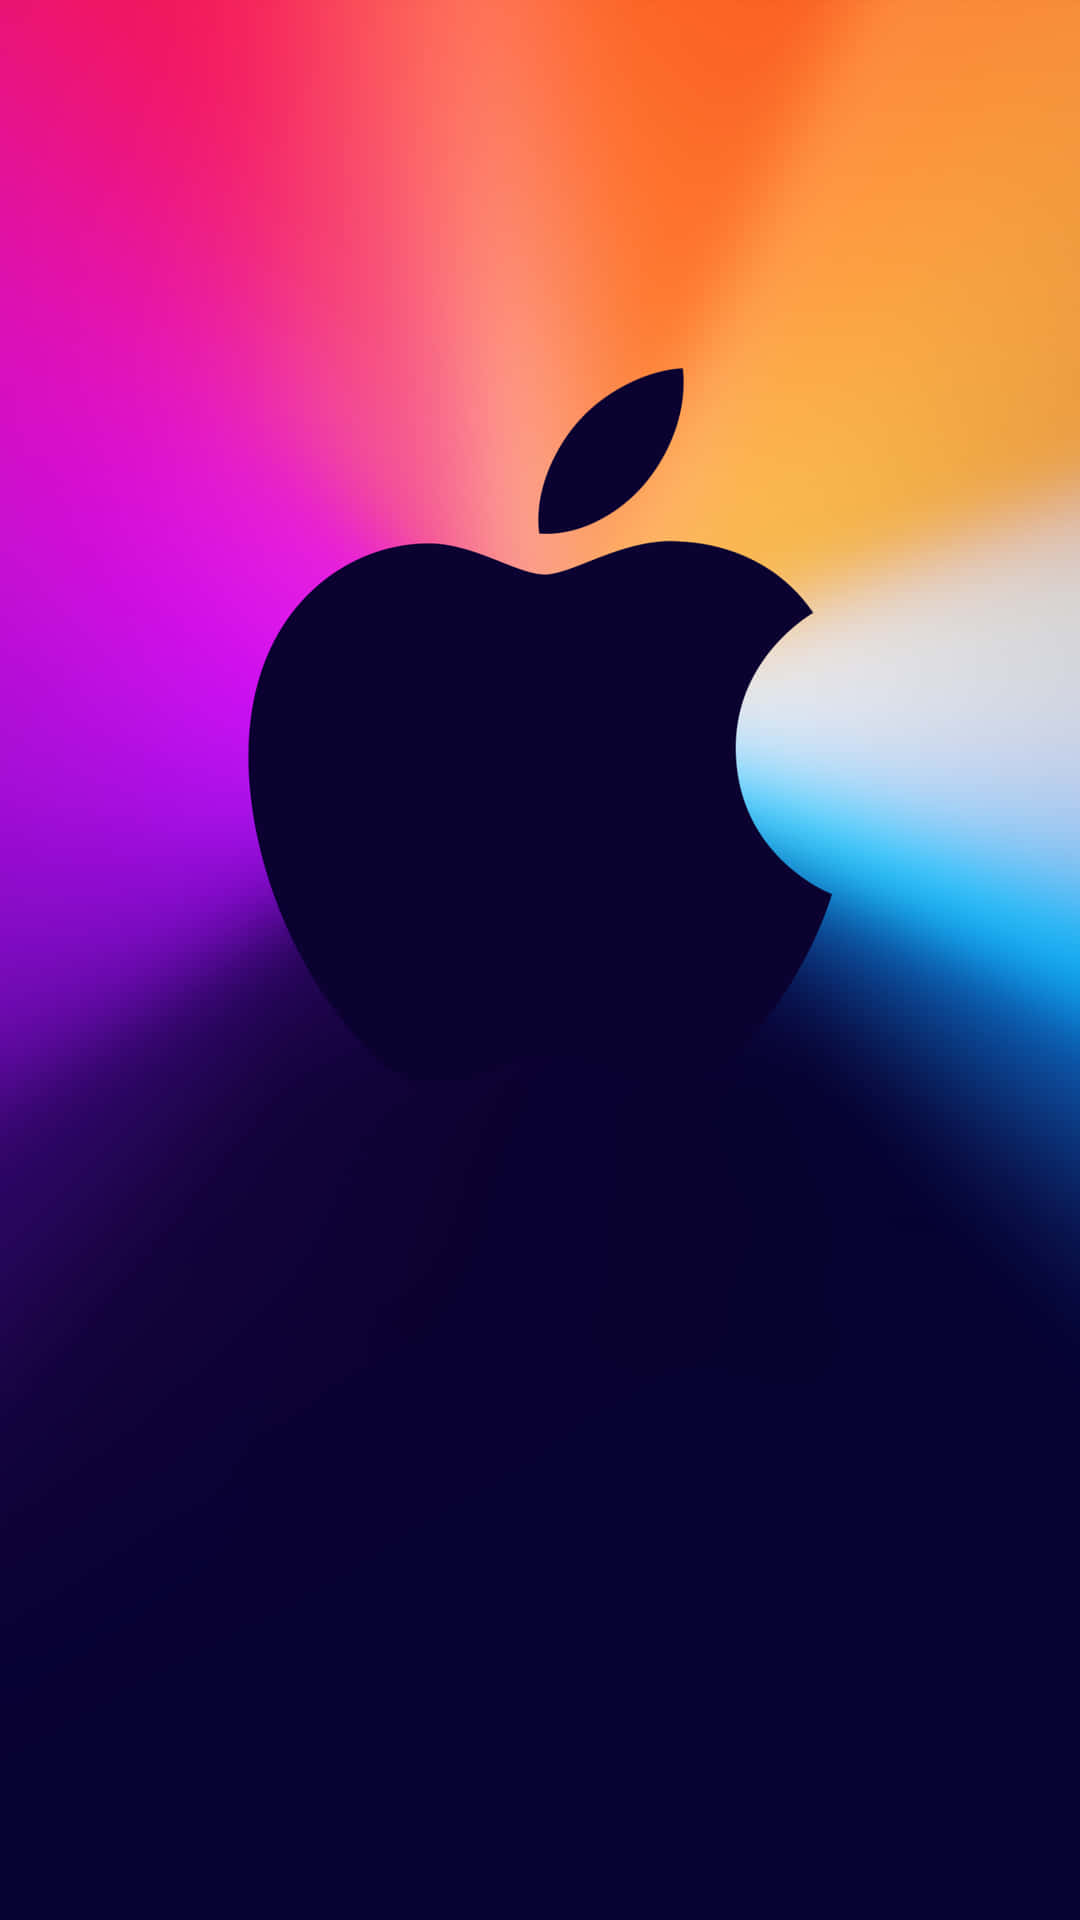 Et tæt på billedet af bagsiden af Pixel 3 med Apple branding.